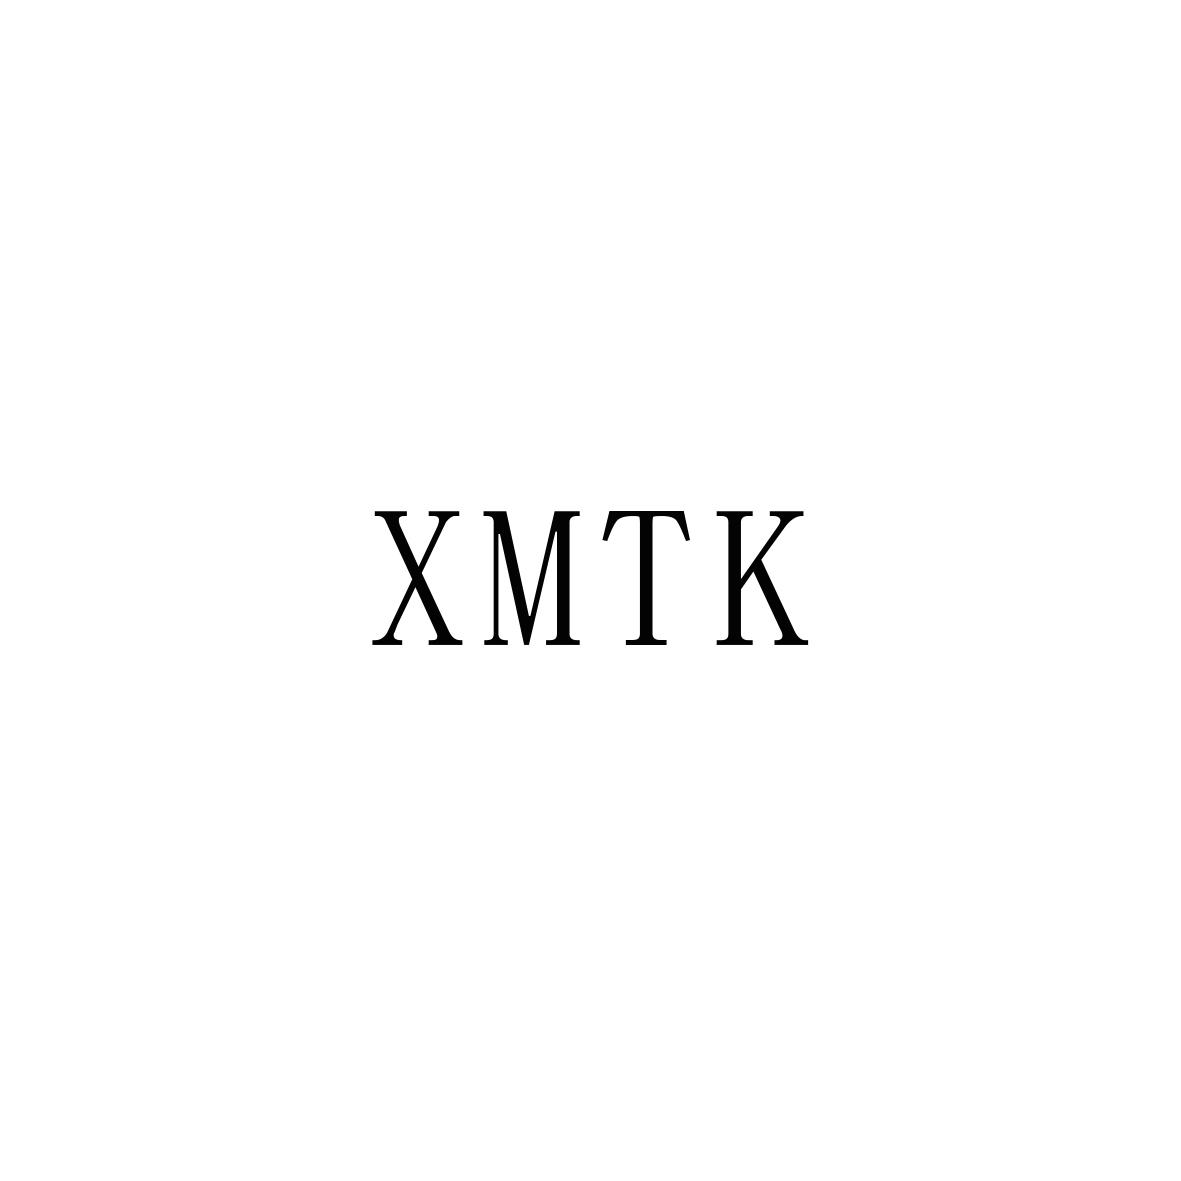 XMTK